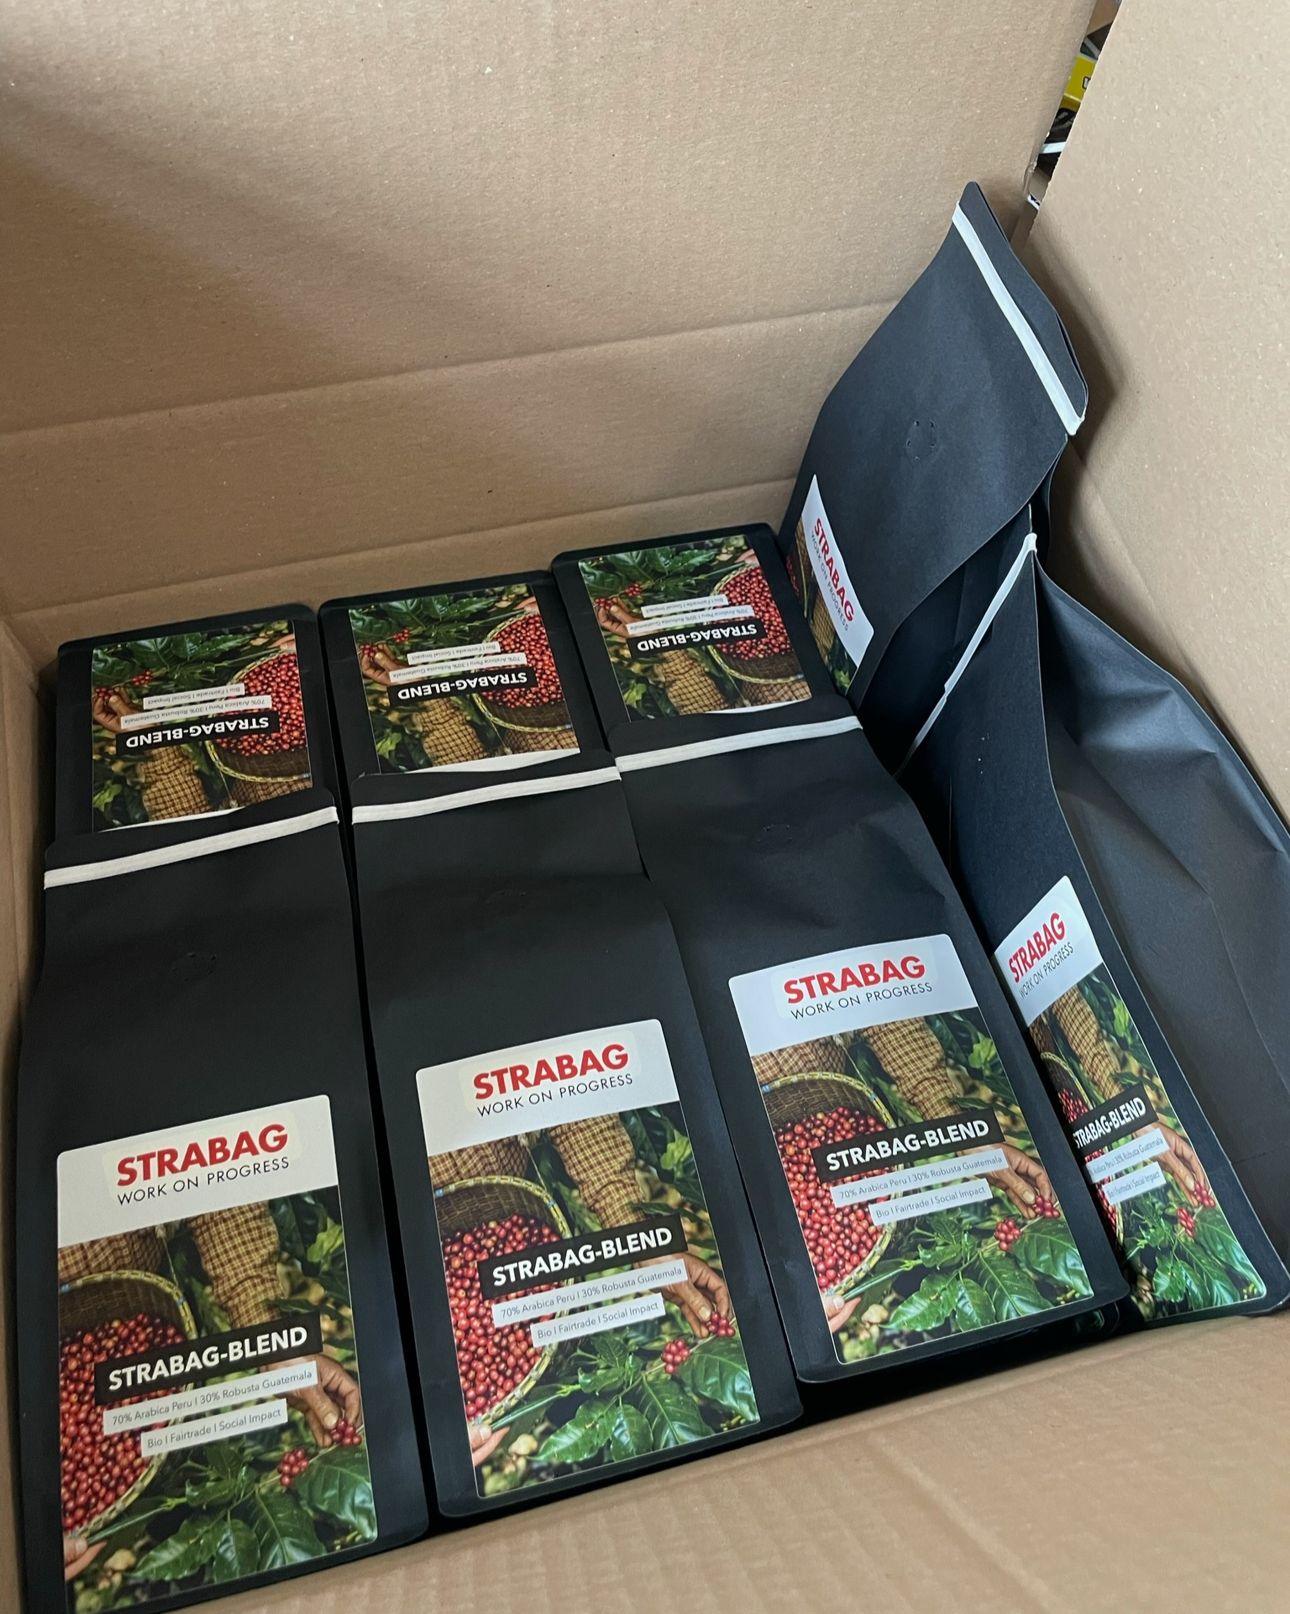 Ein Karton mit mehreren Packungen STRABAG-BLEND Kaffee. Die Kaffeepackungen sind schwarz und haben ein Etikett mit dem STRABAG-Logo sowie einem Bild von Kaffeekirschen und einem Korb. Auf dem Etikett steht "70% Arabica Peru / 30% Robusta Guatemala", "Bio", "Fairtrade" und "Social Impact".